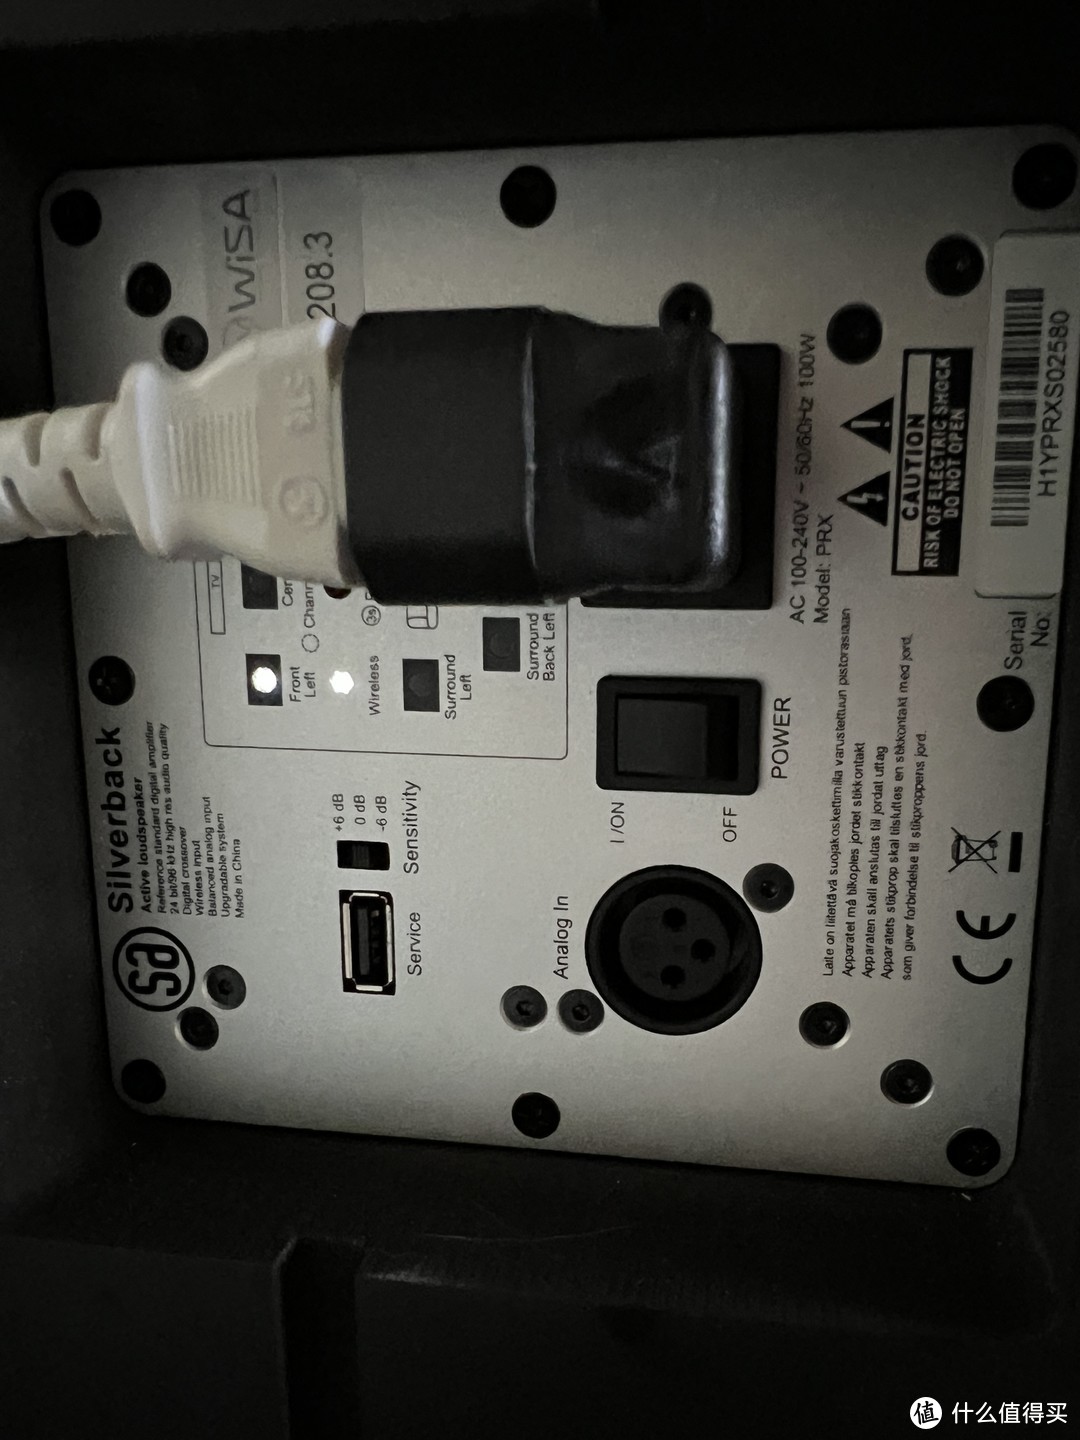 系统的声音——丹麦SA 7.2s有源无线音箱开箱和简评（含无线音频输入集线器）